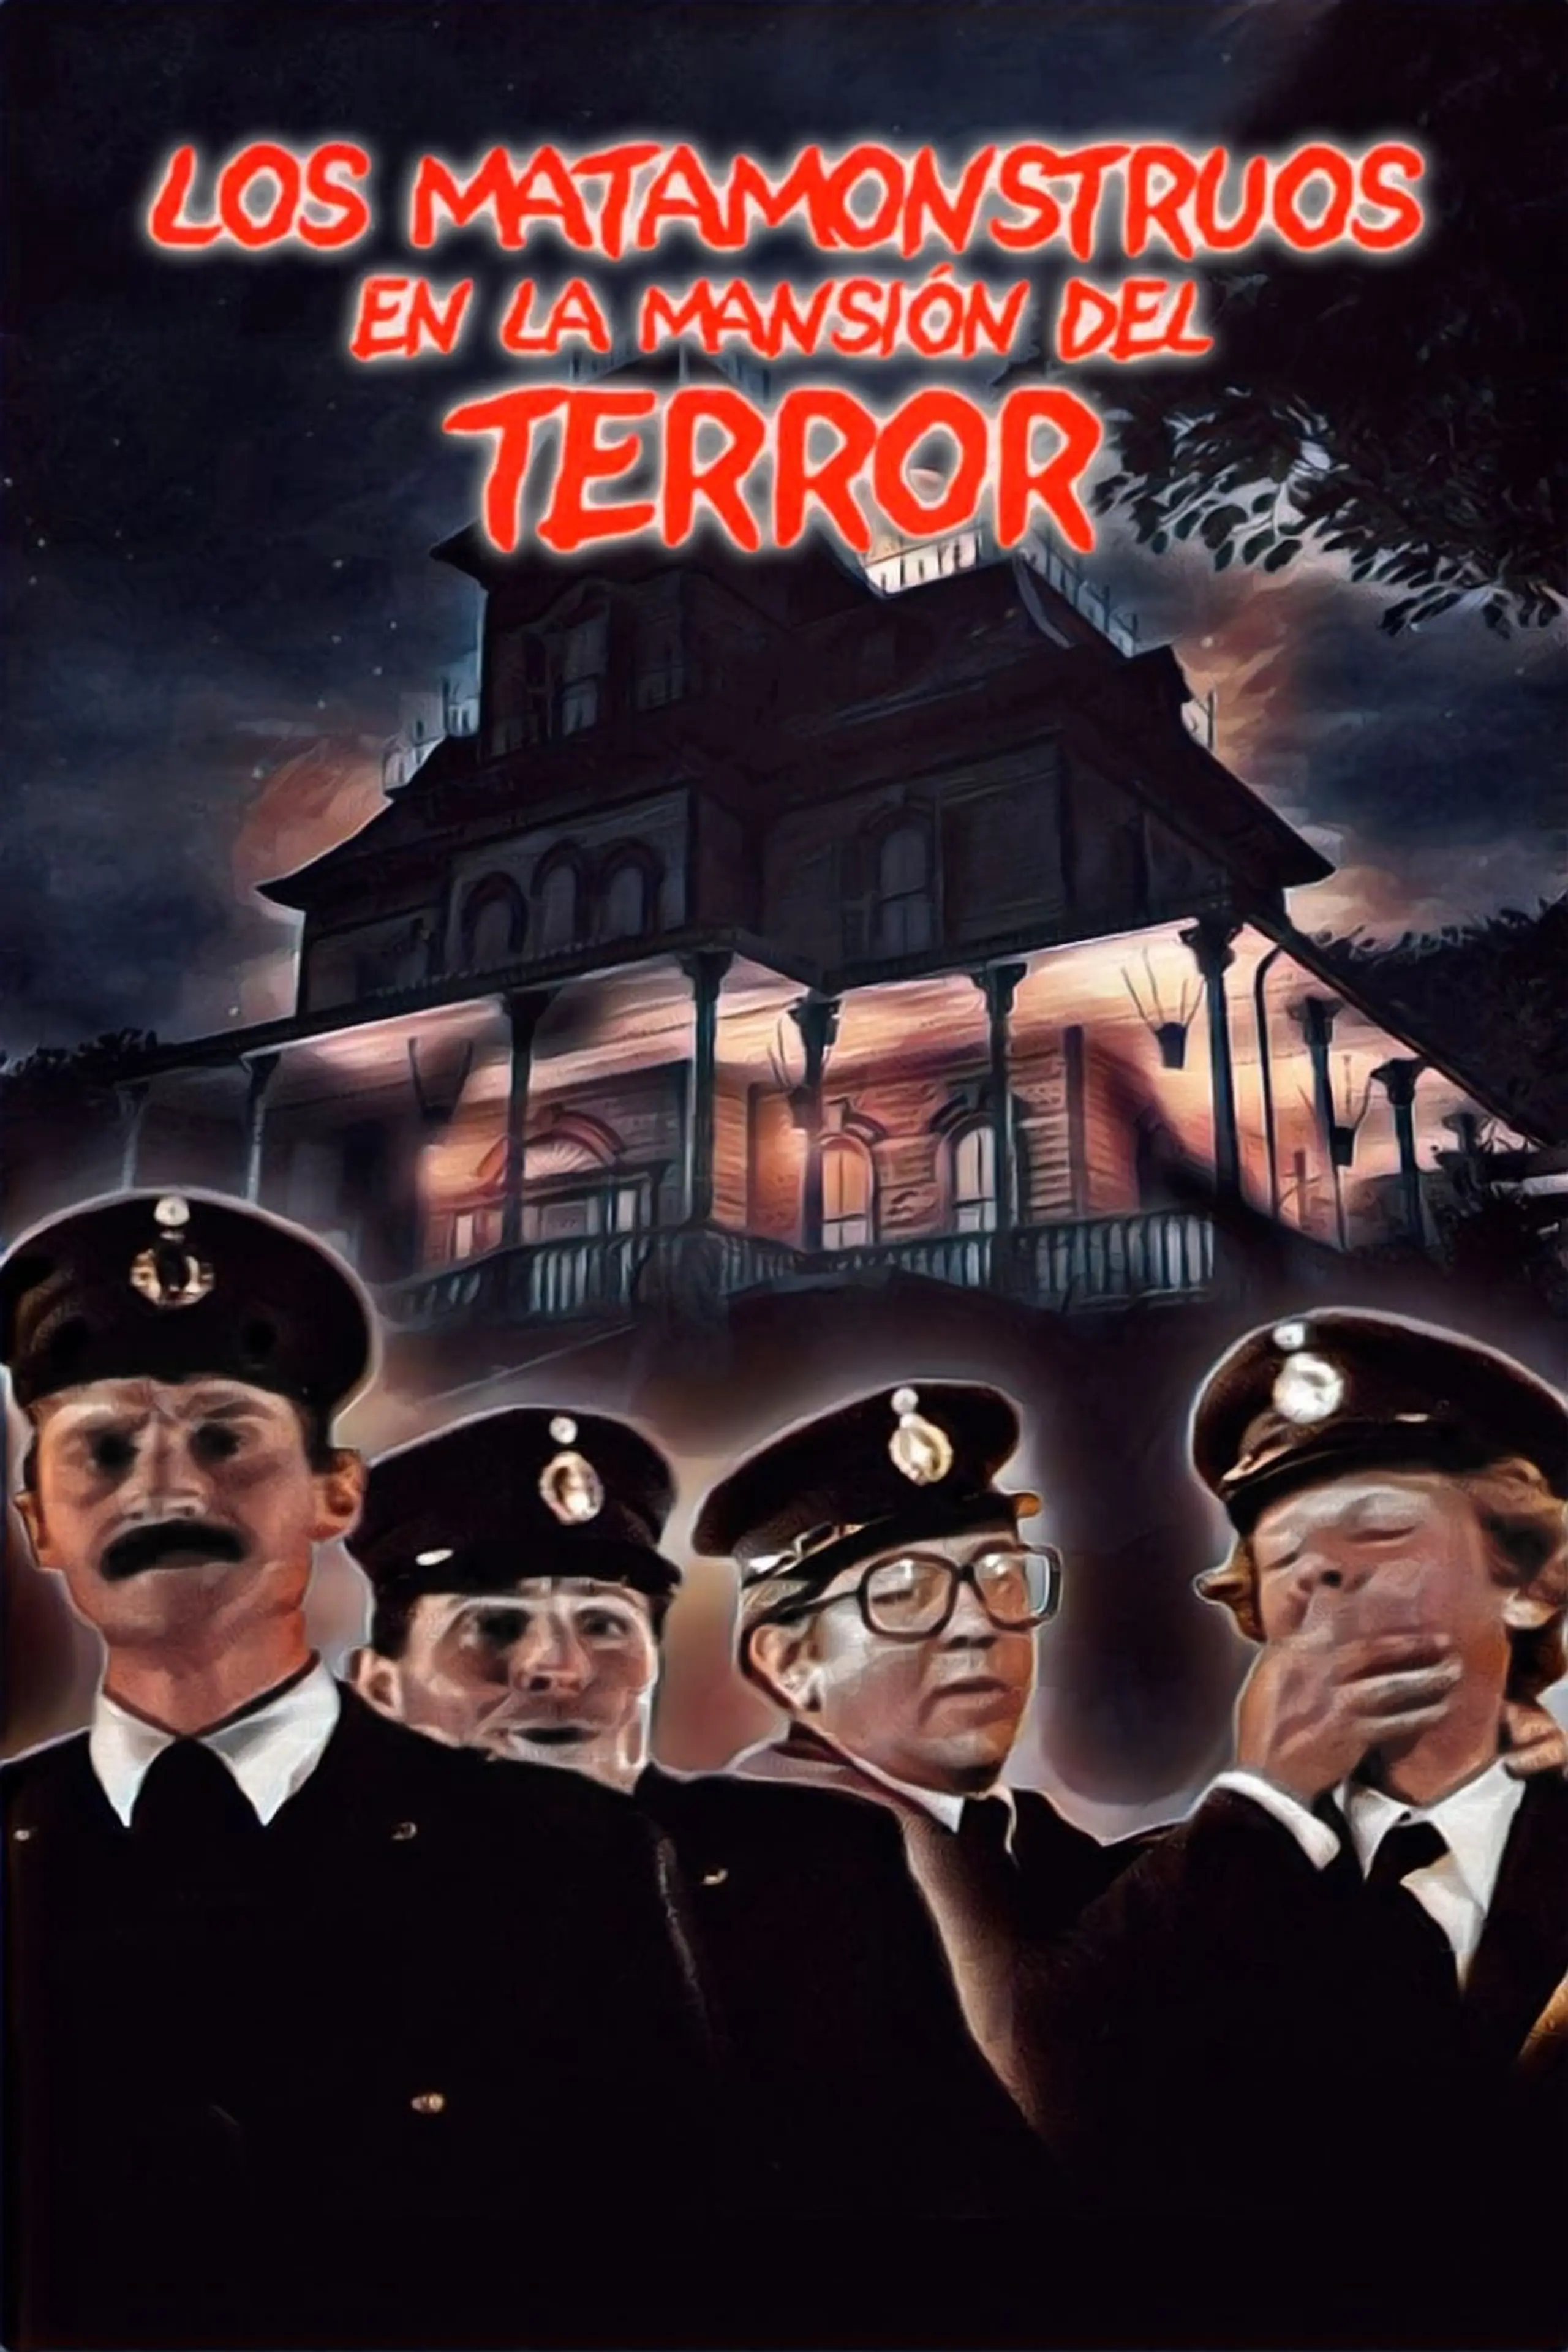 Los matamonstruos en la mansion del terror